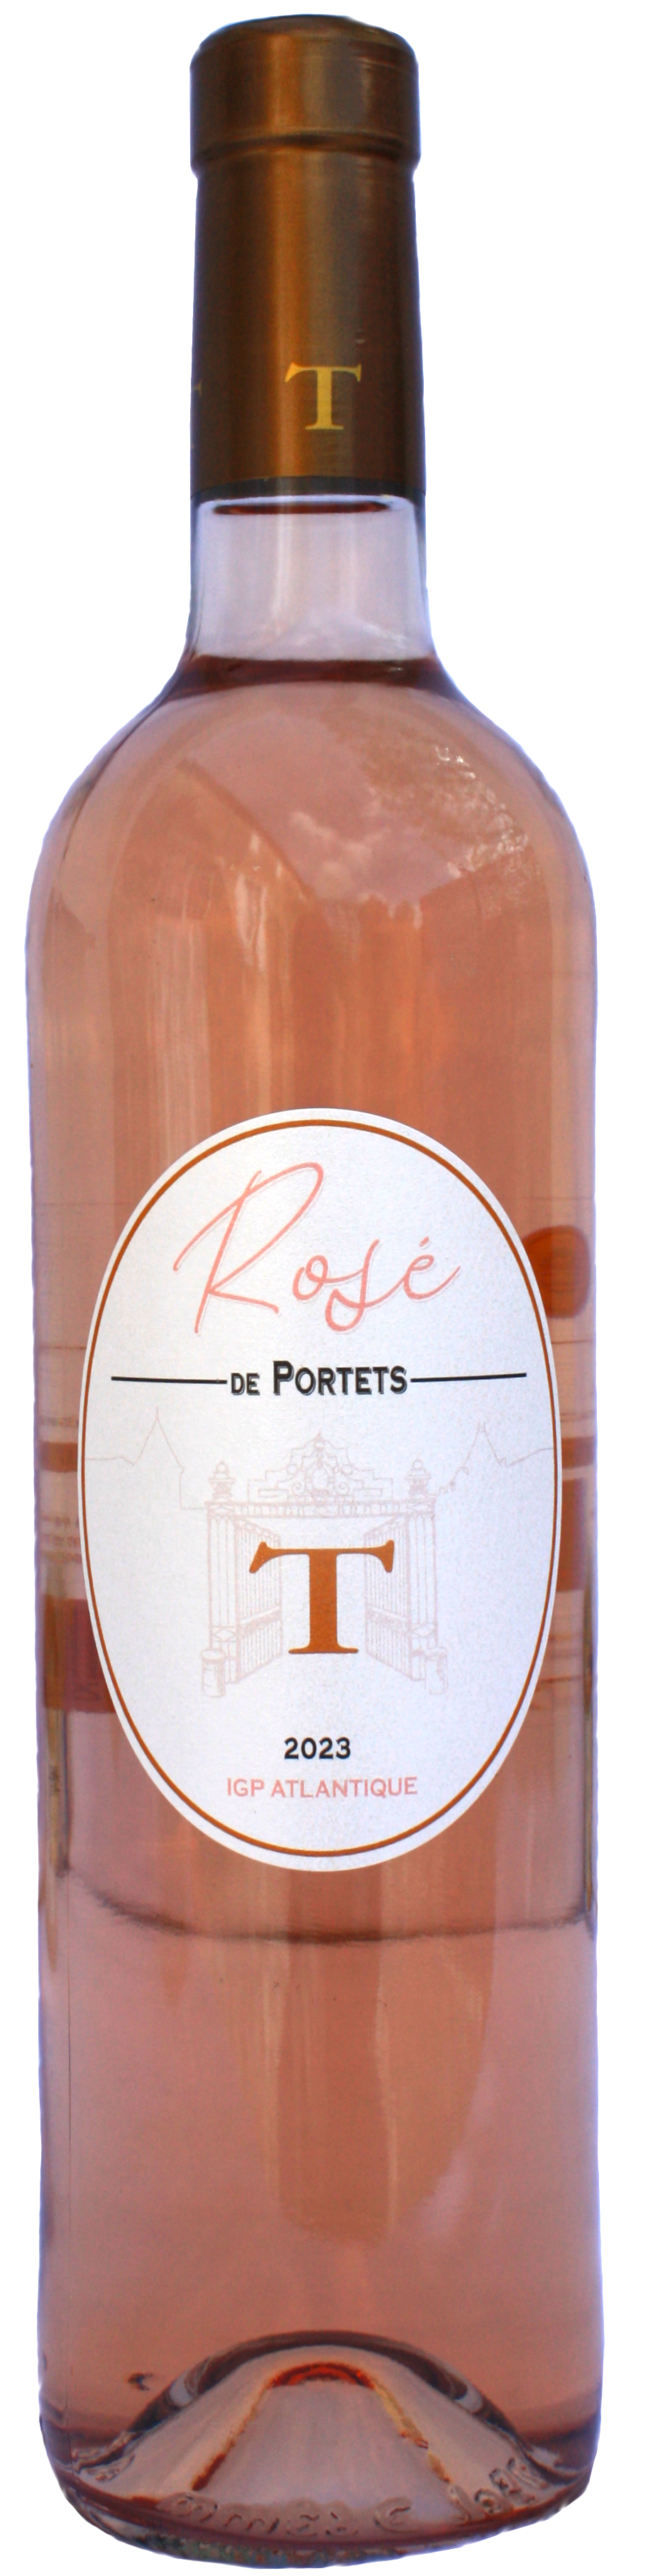 Rosé de Portets IGP Atlantique